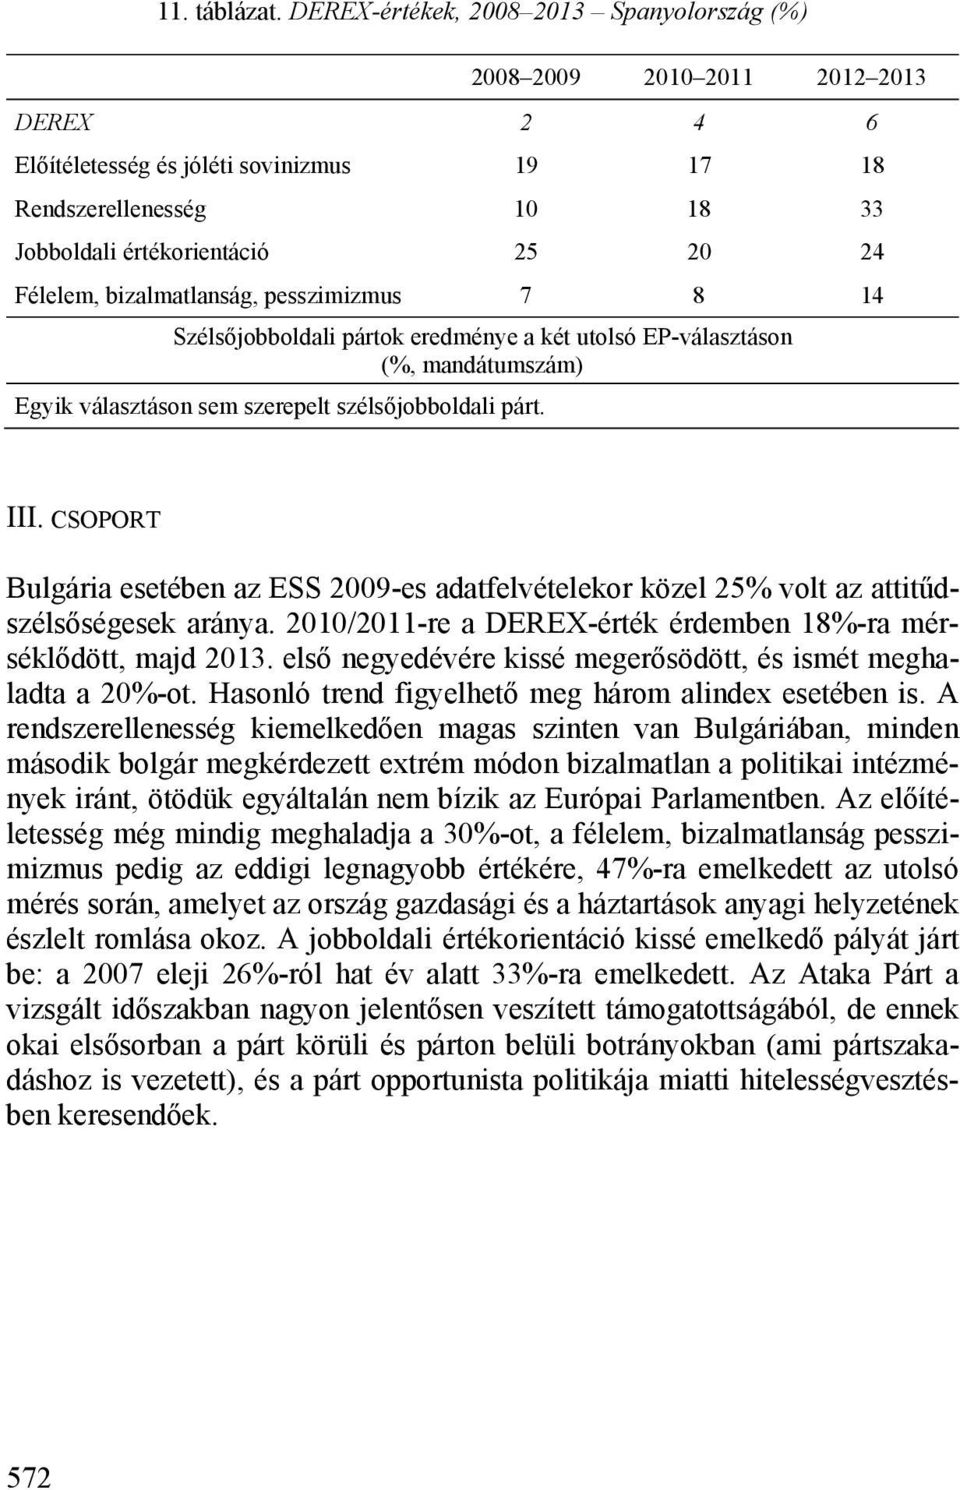 pesszimizmus 7 8 14 Egyik választáson sem szerepelt szélsőjobboldali párt. III. CSOPORT Bulgária esetében az ESS 2009-es adatfelvételekor közel 25% volt az attitűdszélsőségesek aránya.